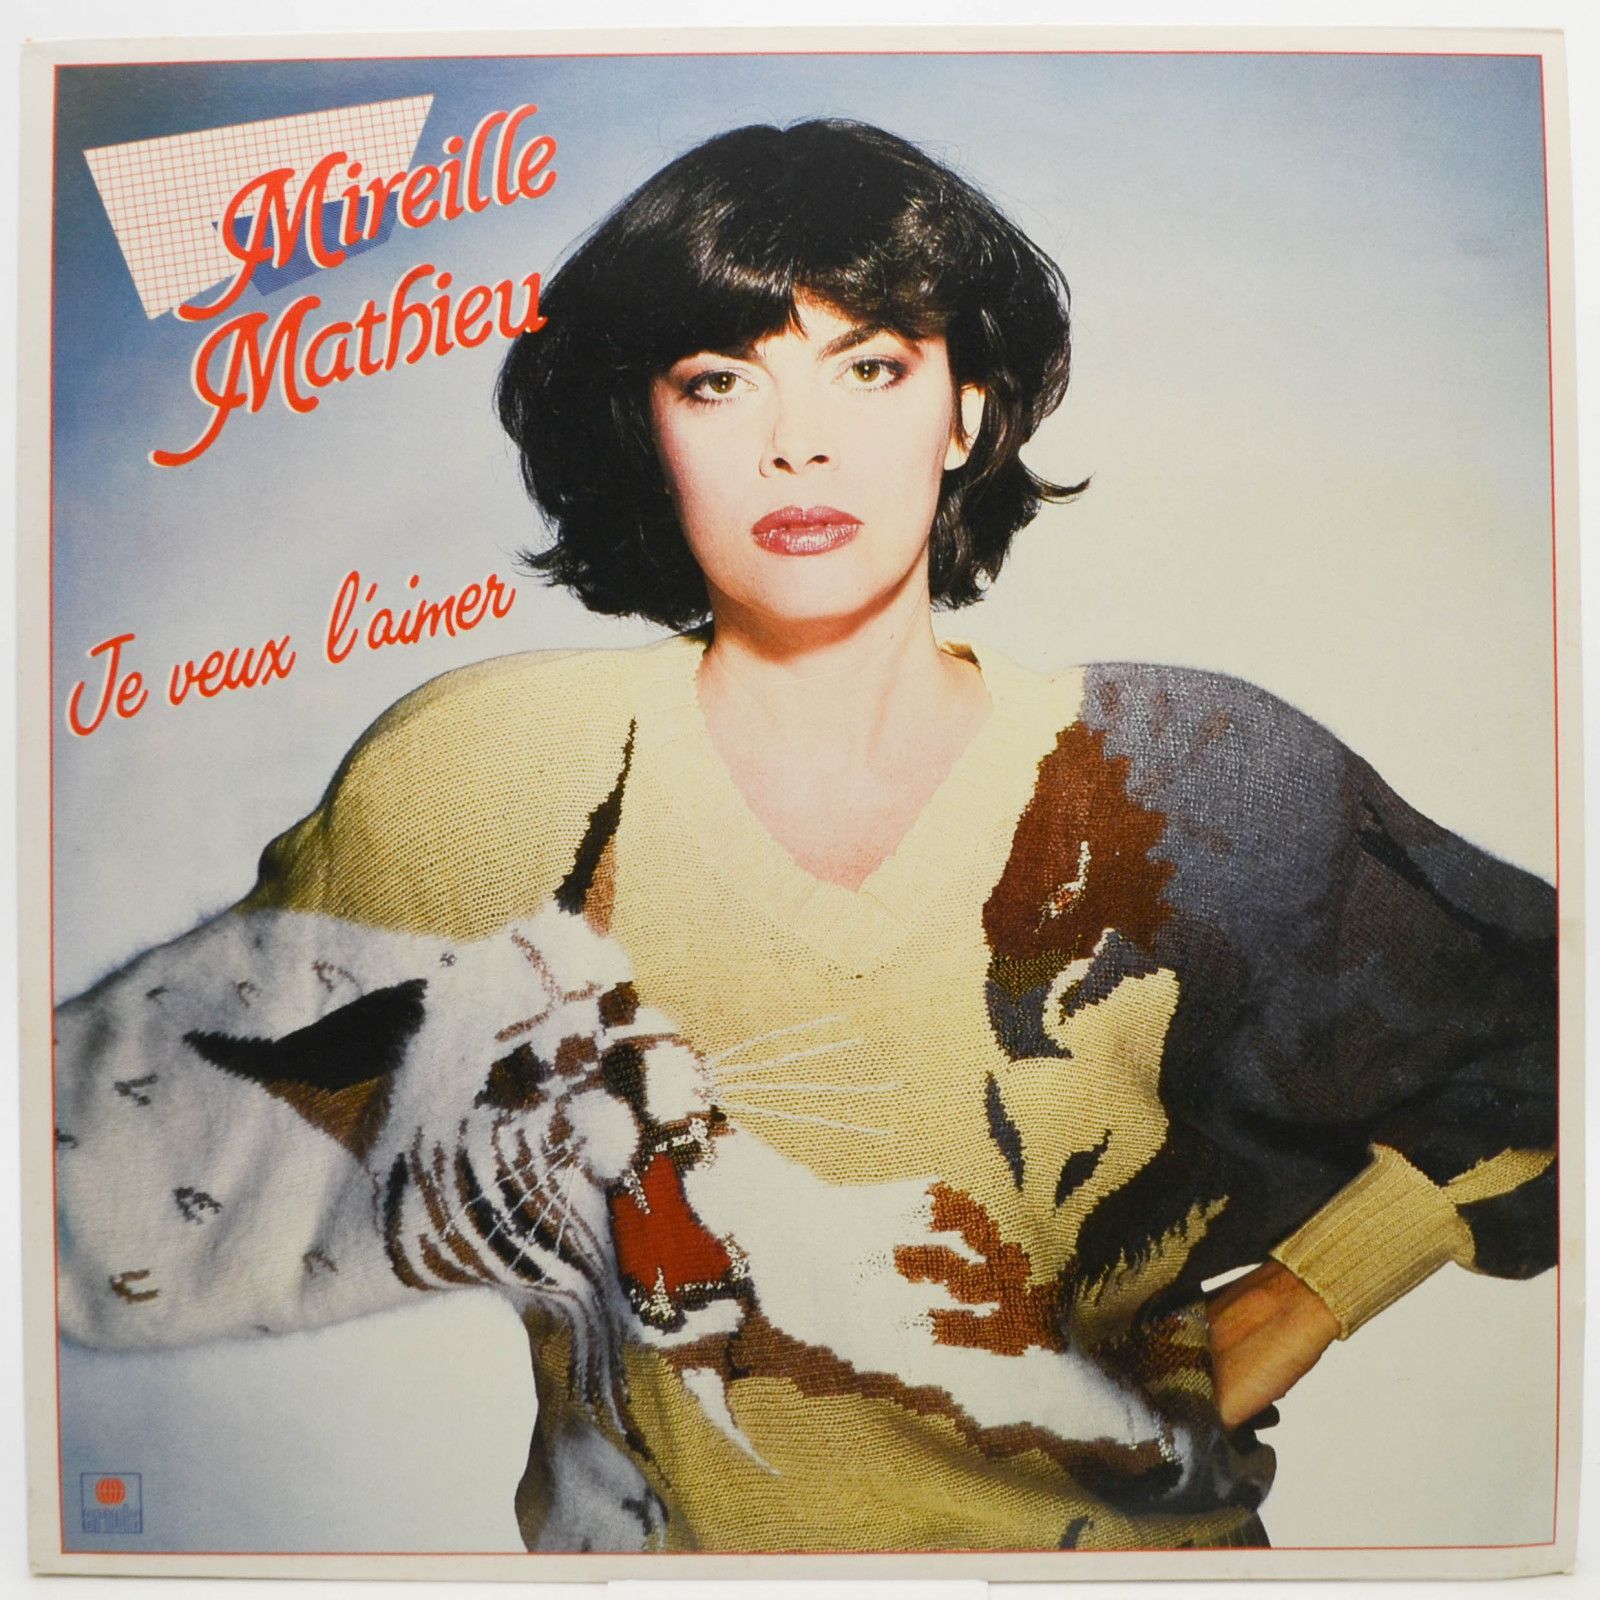 Mireille Mathieu — Je Veux L'aimer, 1983